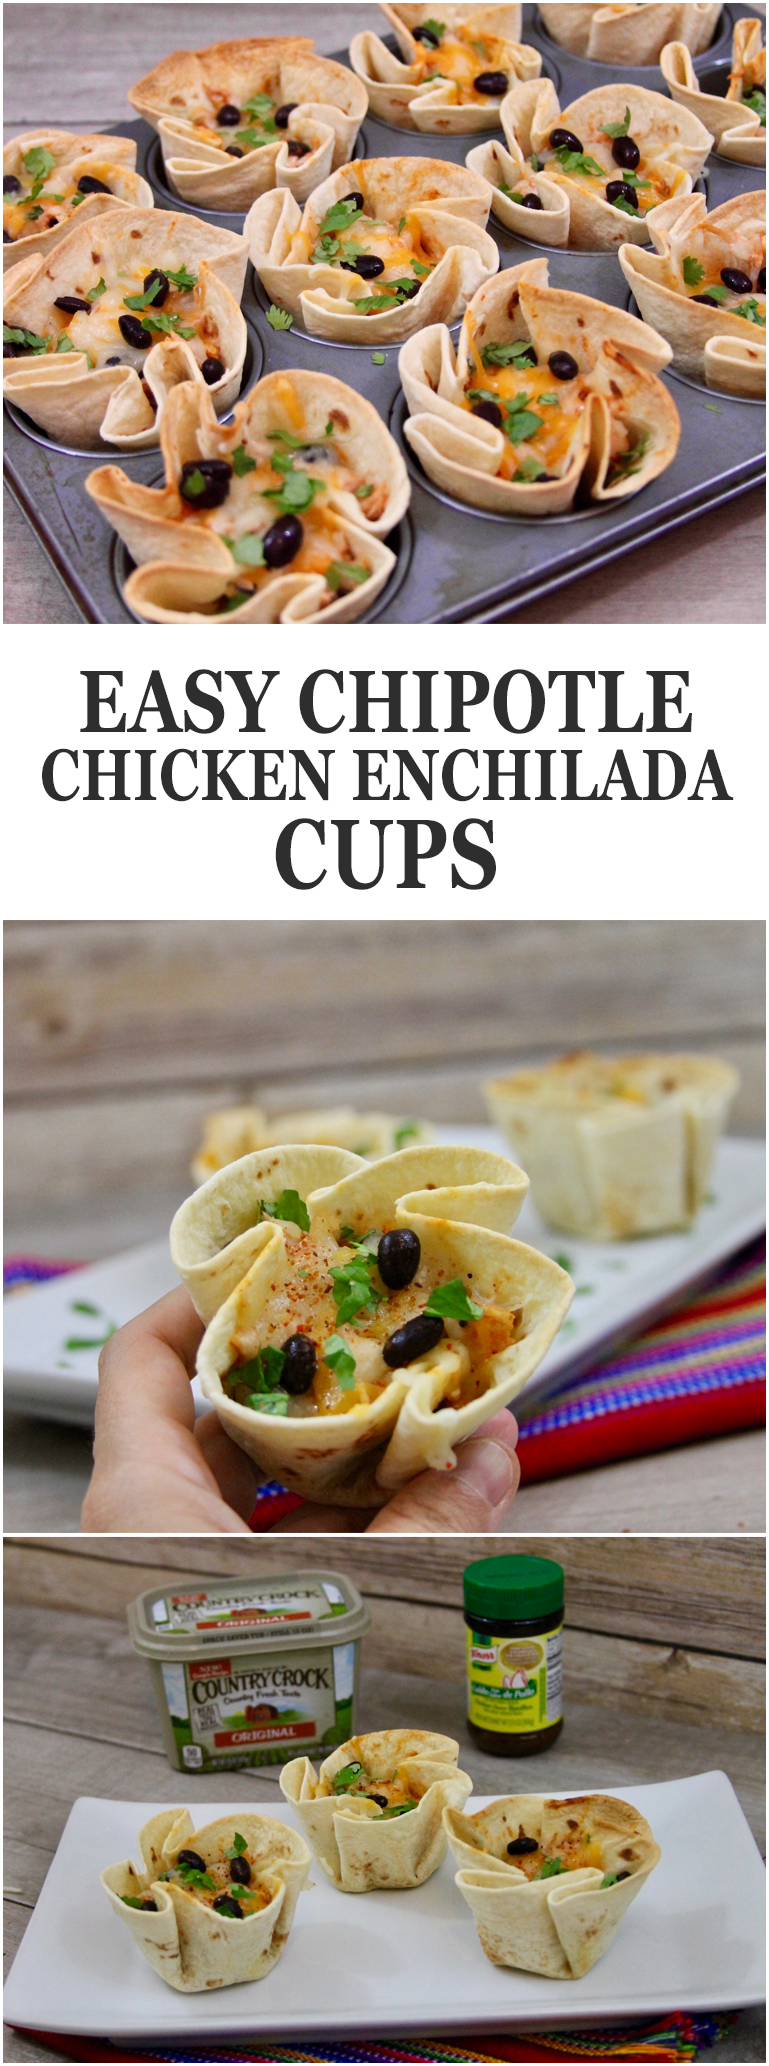 Easy Chipotle Chicken Enchilada Cups Recipe